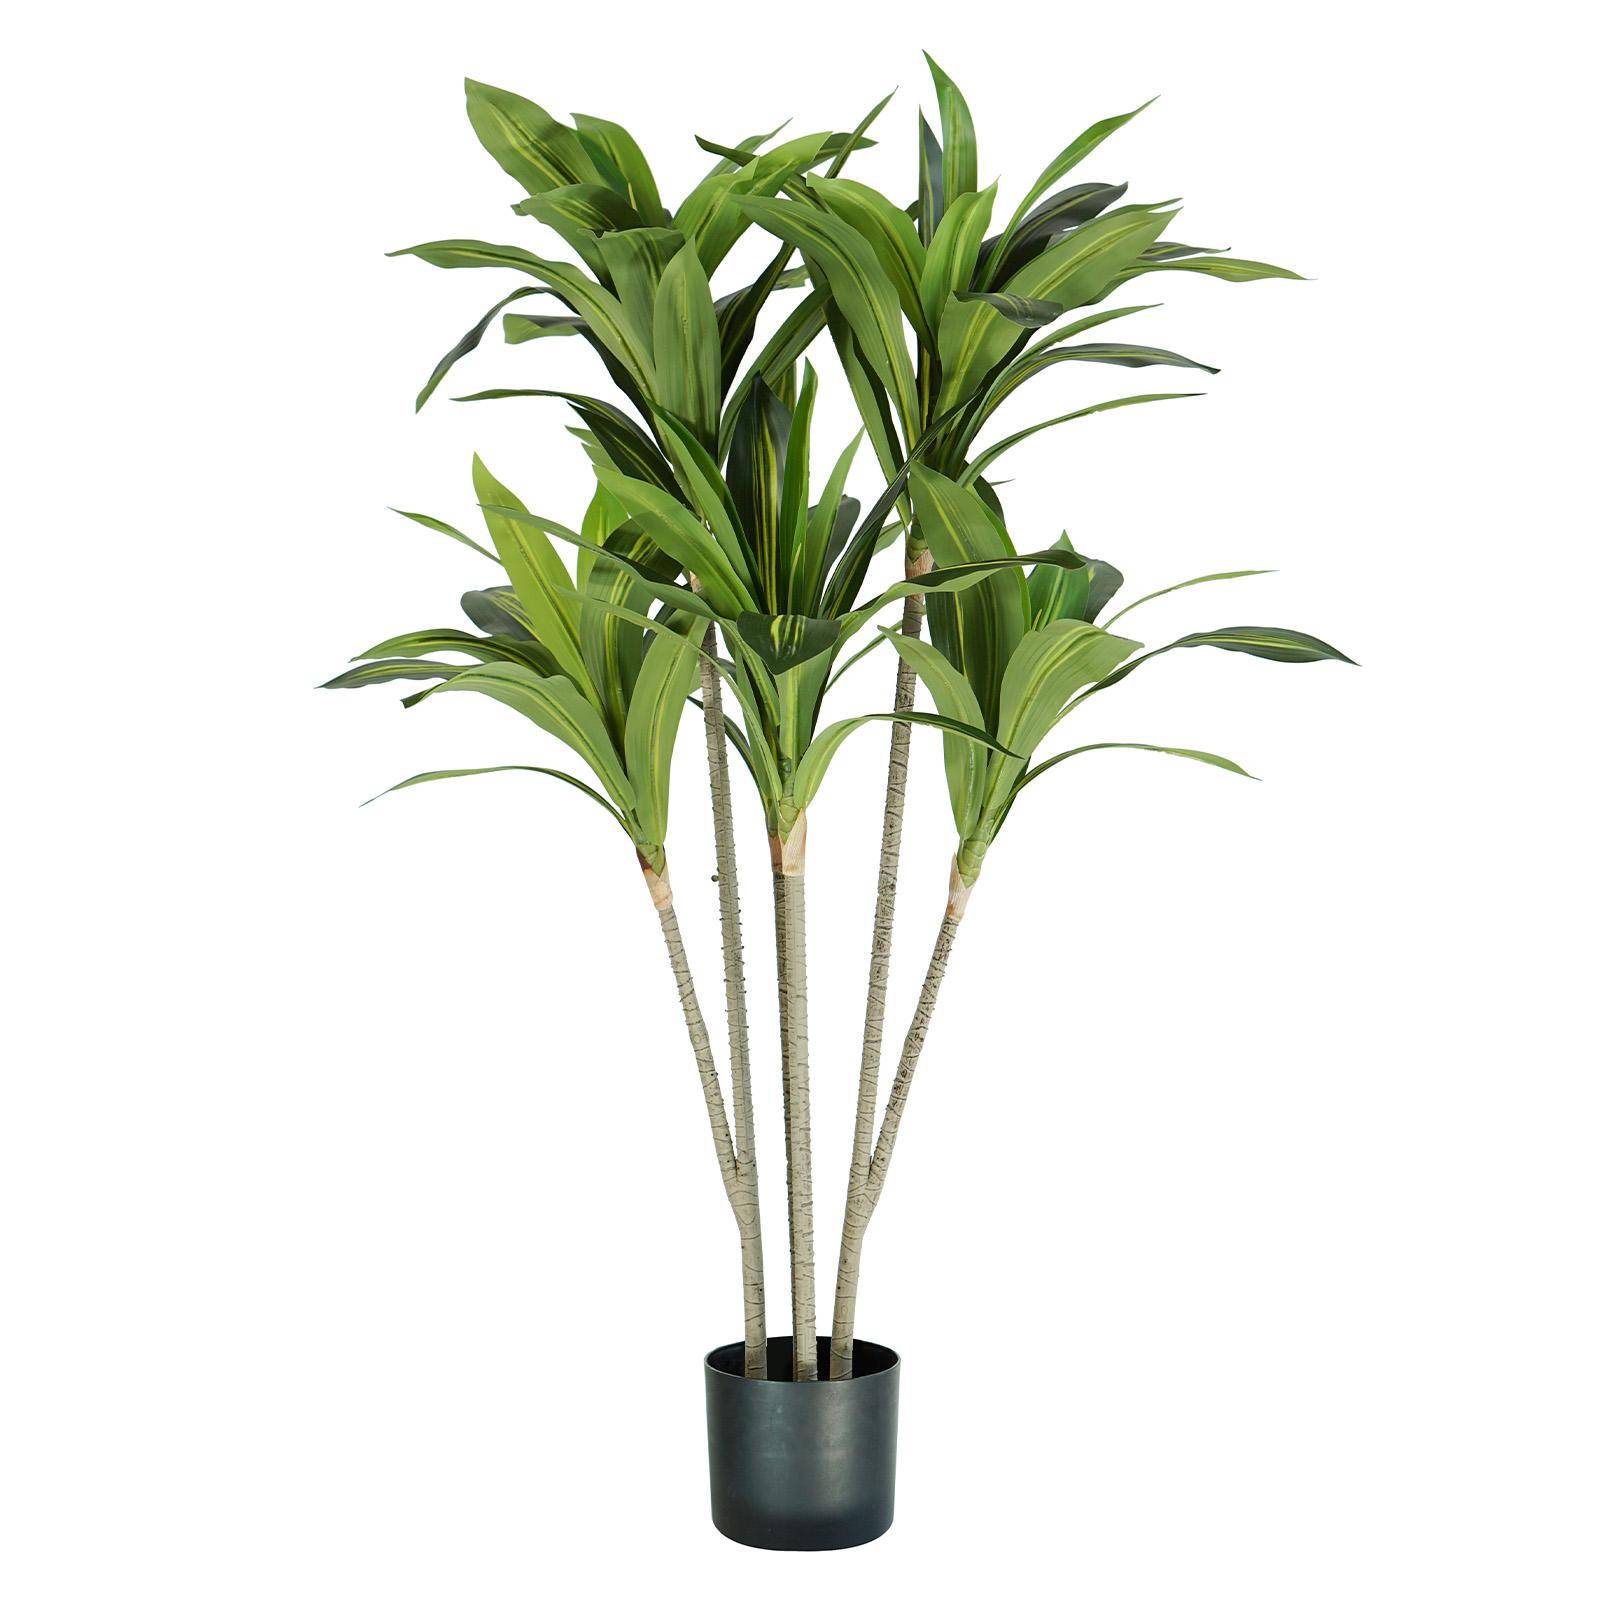 Pianta artificiale di dracaena 130 cm con 88 foglie in vaso